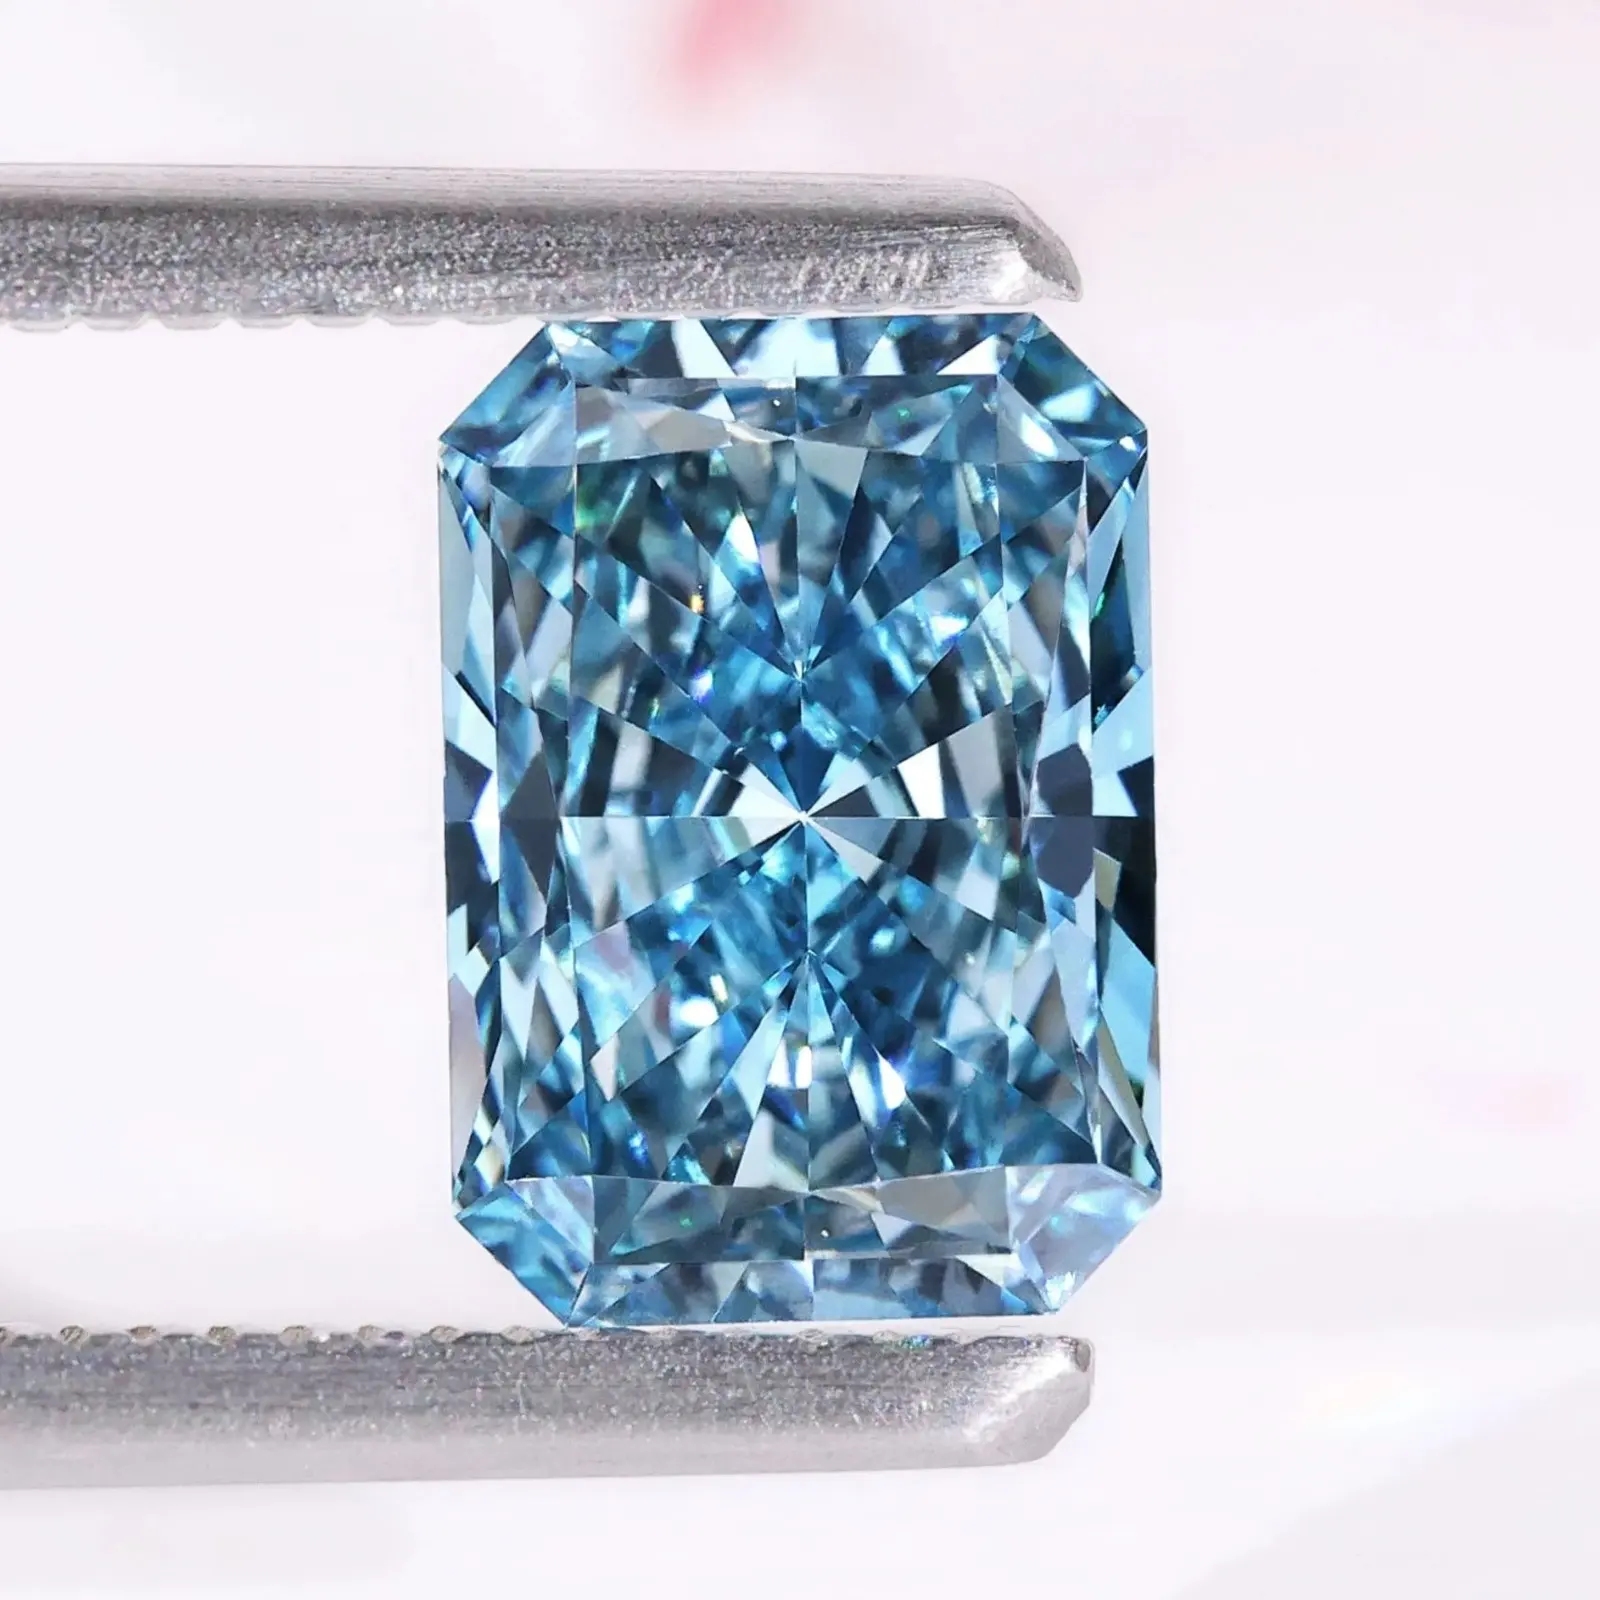 Presentación de laboratorio natural cultivado 4 quilates elegante azul intenso VVS 2 excelente corte esmeralda diamante fabricación empresa joyería